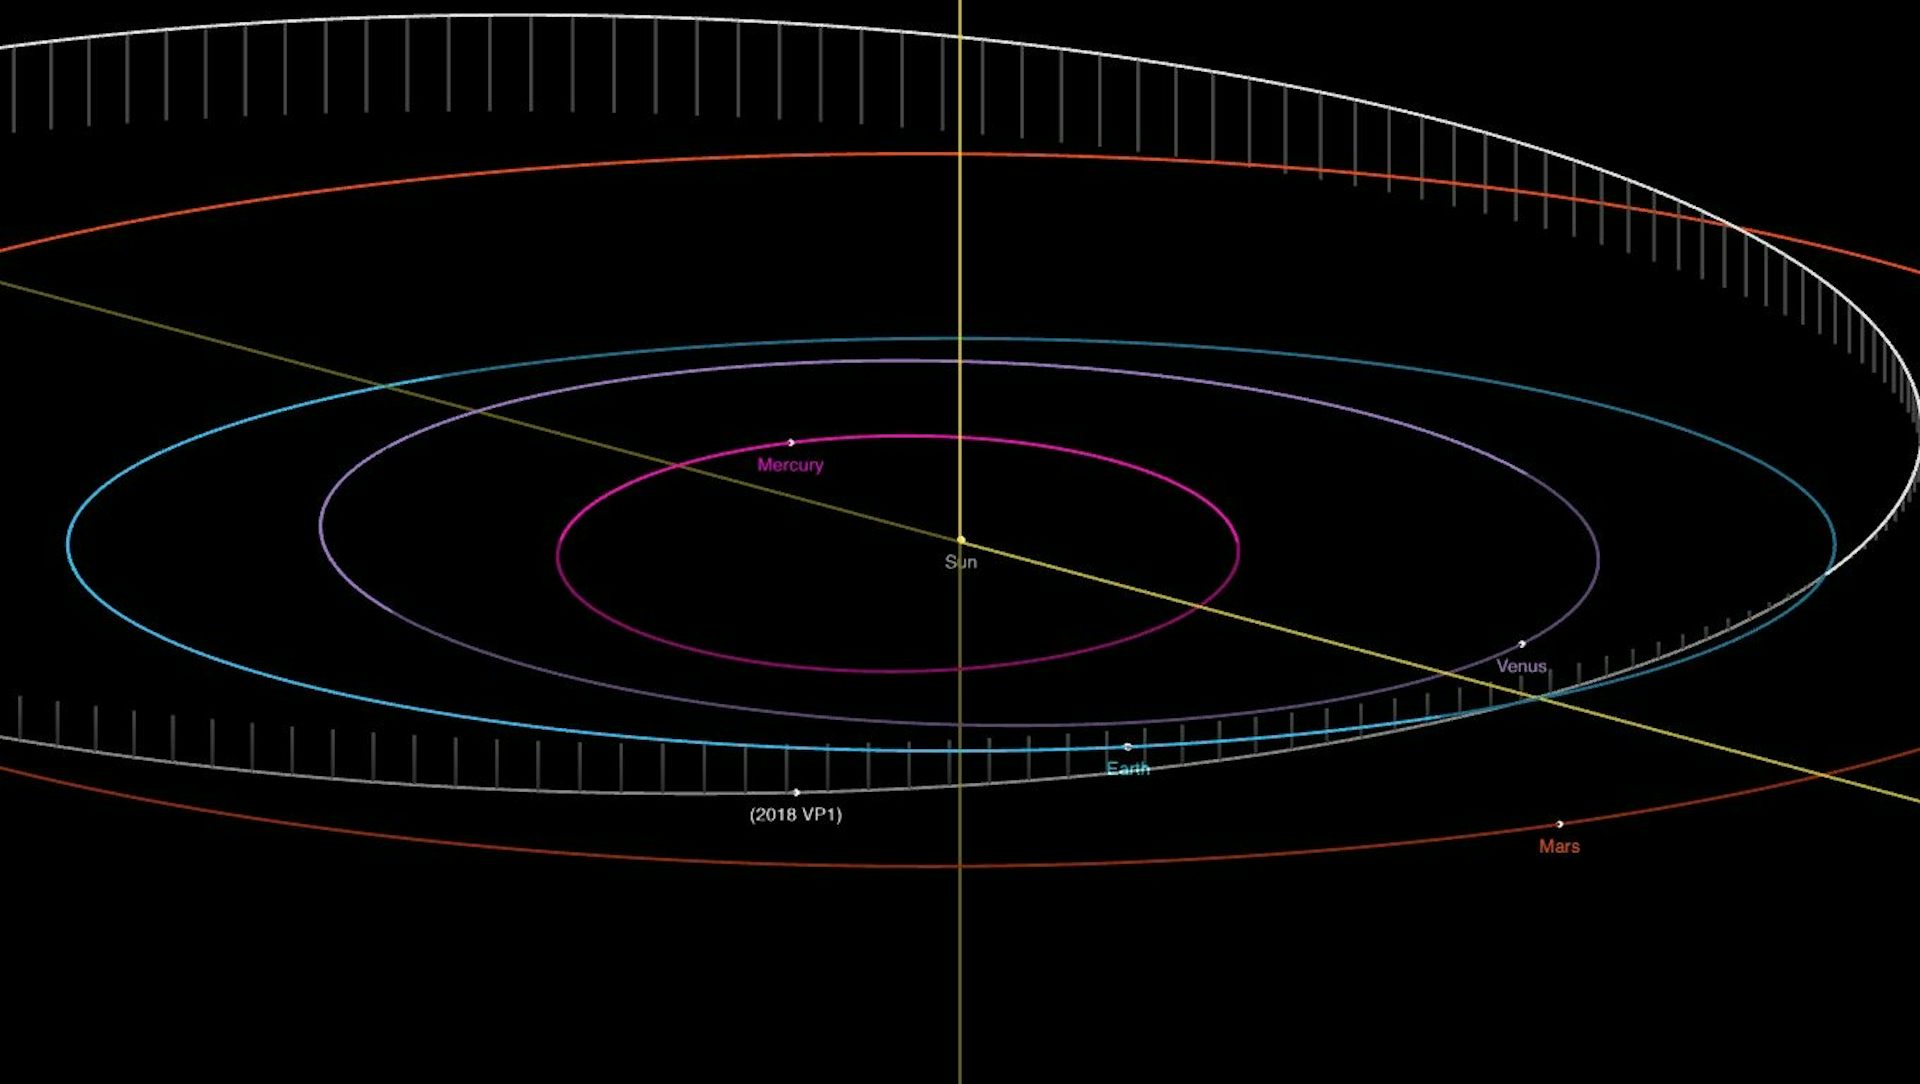 Diagramm, das die sich überschneidenden Bahnen des Asteroiden 2018 VP₁ und der Erde zeigt.